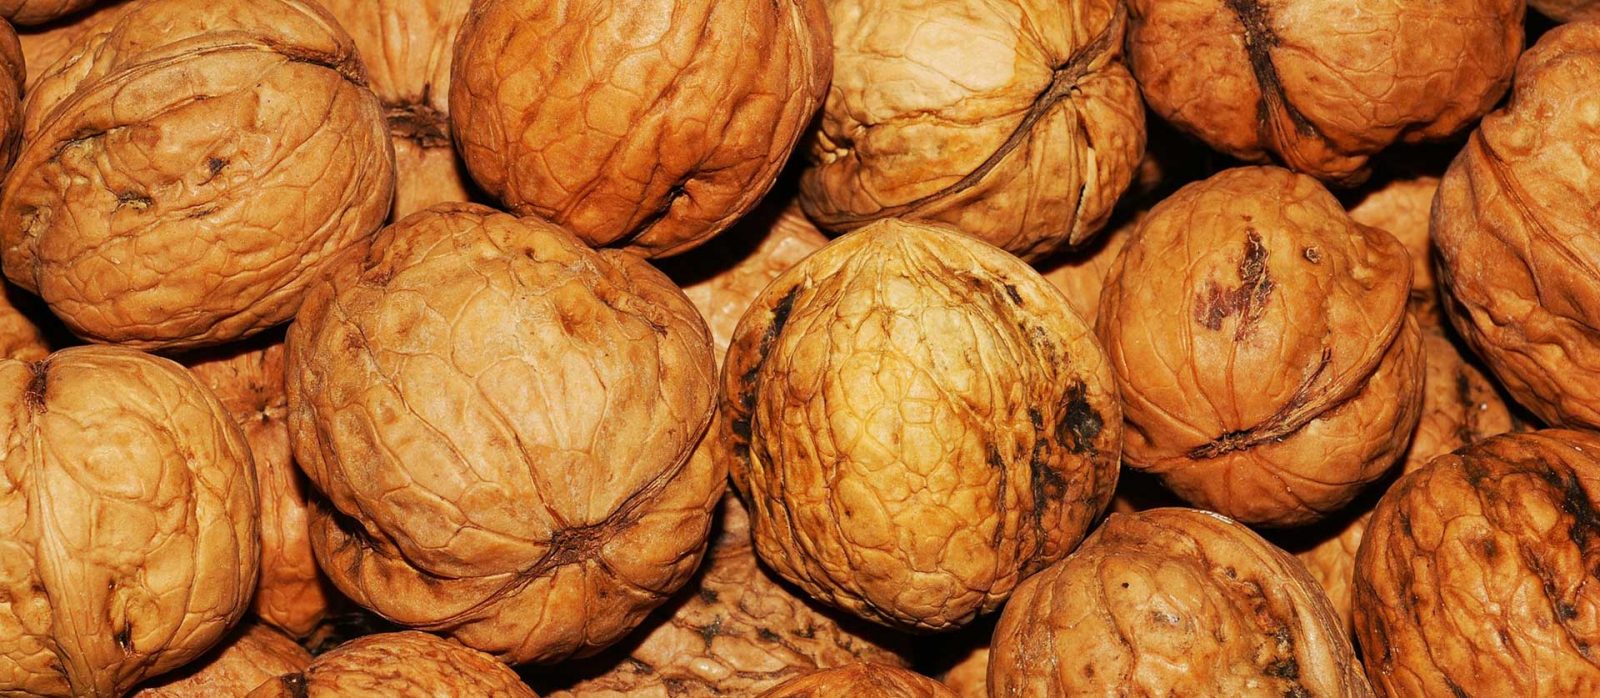 walnut exporters